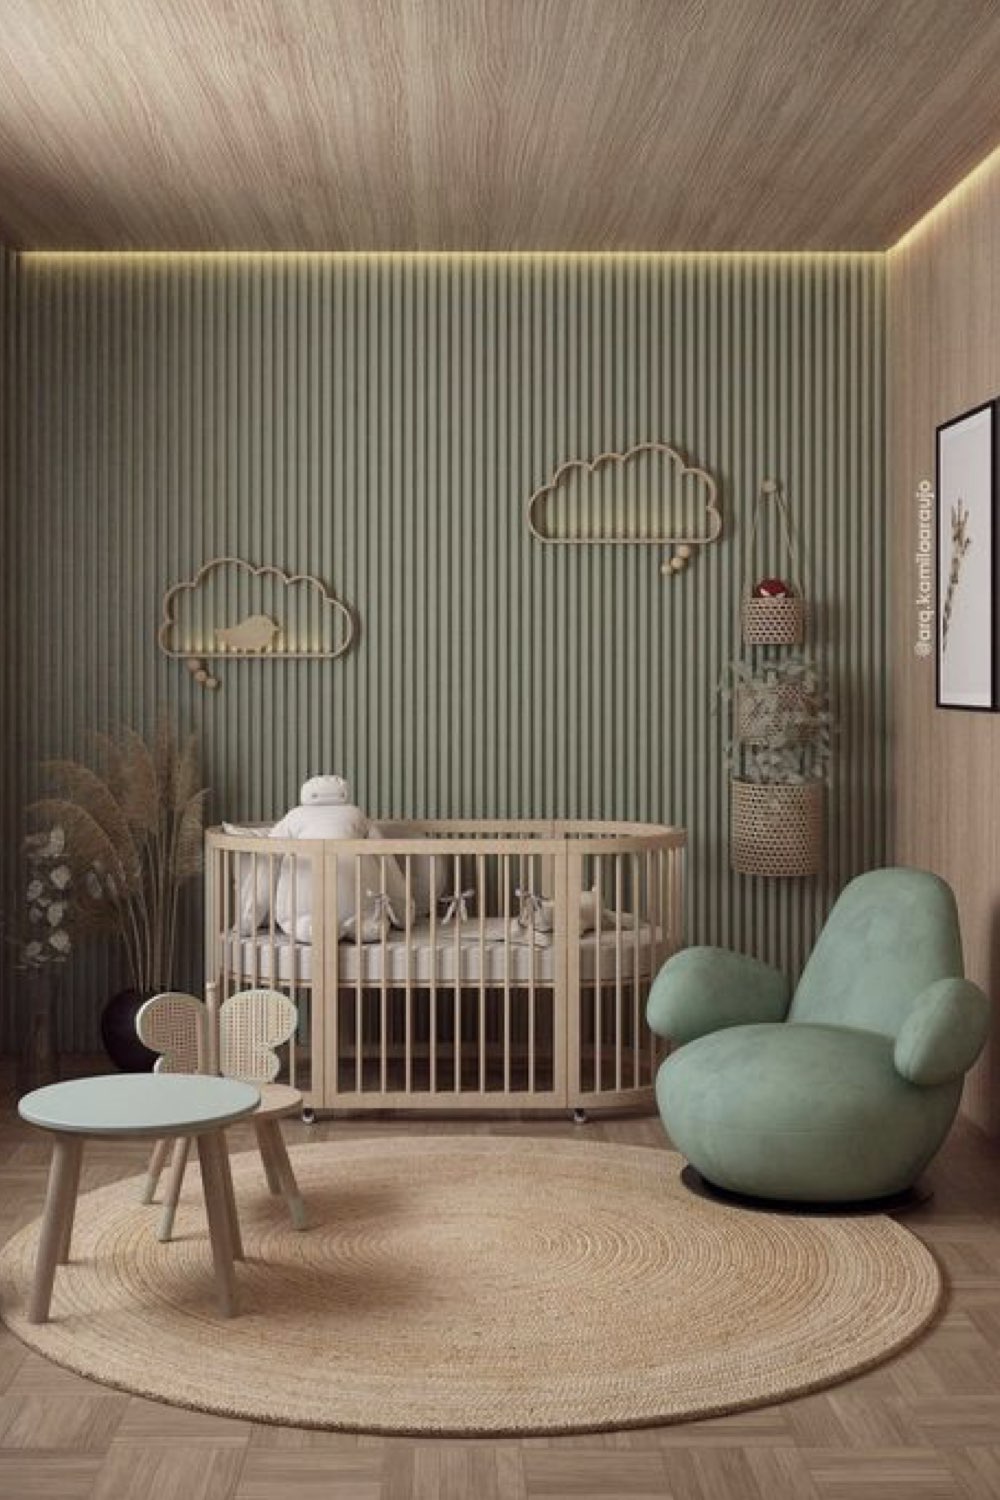 deco chambre bebe garcon moderne nature tendance revêtement bois plafond tasseaux peint vert sauge tapis rond en jute lit à barreaux arrondi